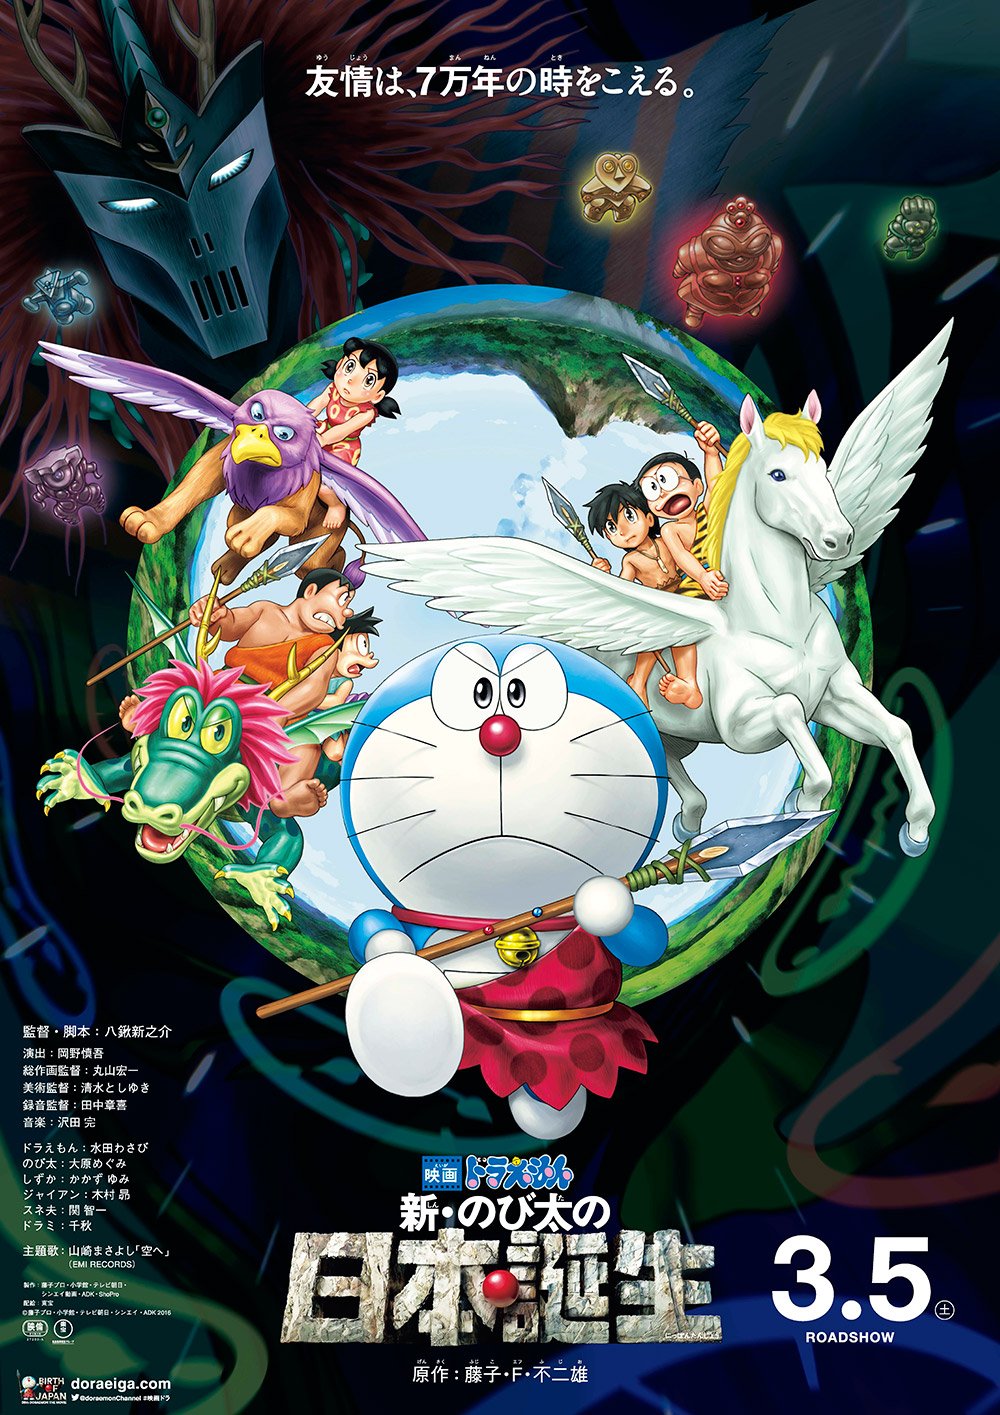 ดูหนังออนไลน์ Doraemon The Movie 10 (1989) โดเรม่อนเดอะมูฟวี่ ท่องแดนญี่ปุ่นโบราณ